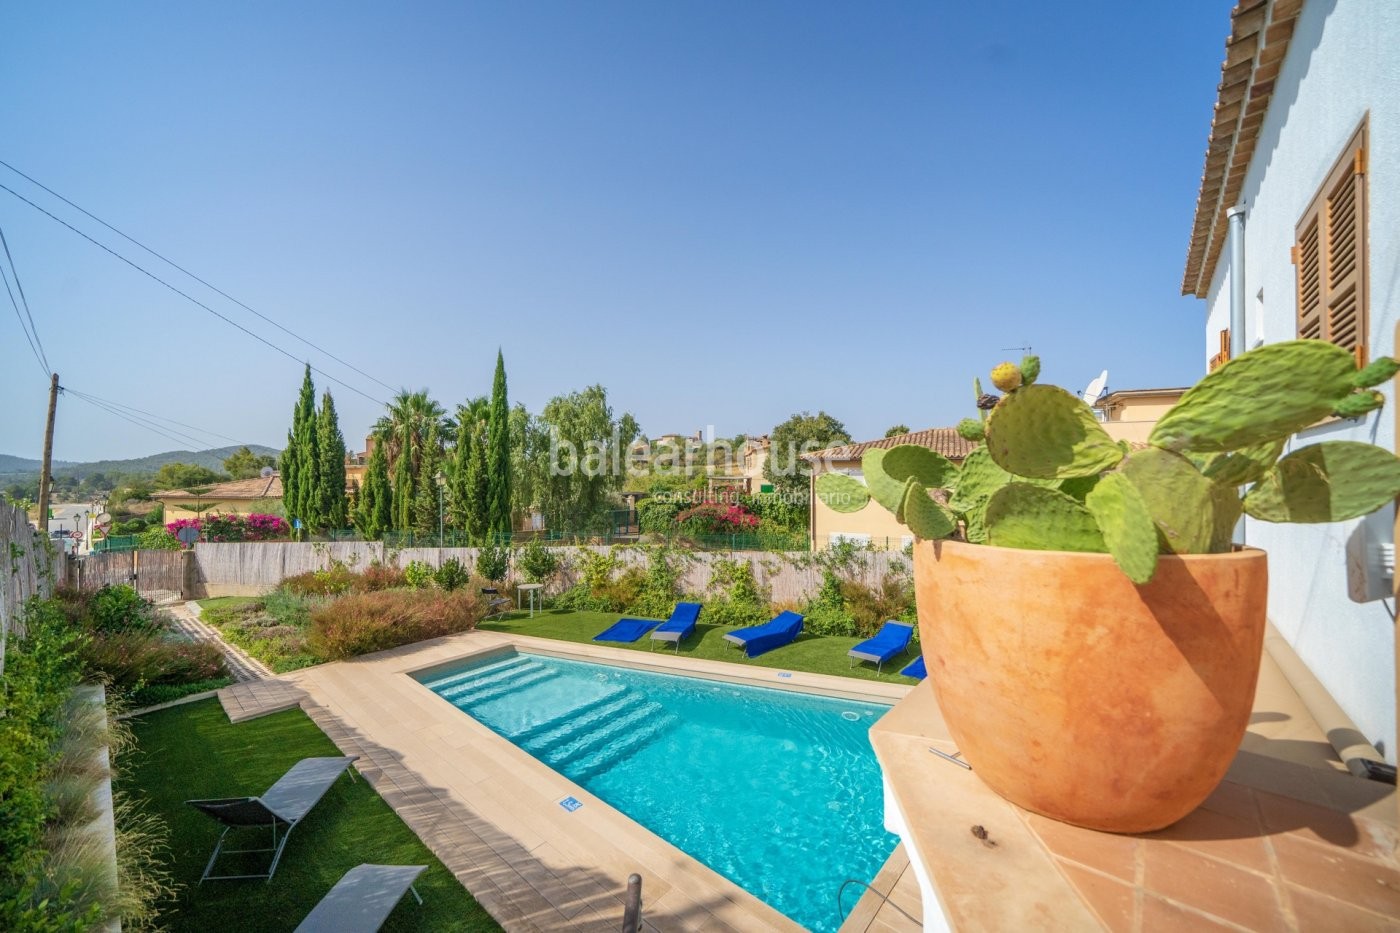 Helle Villa mit Pool und Garten im privilegierten Südwesten von Mallorca in Calvia.